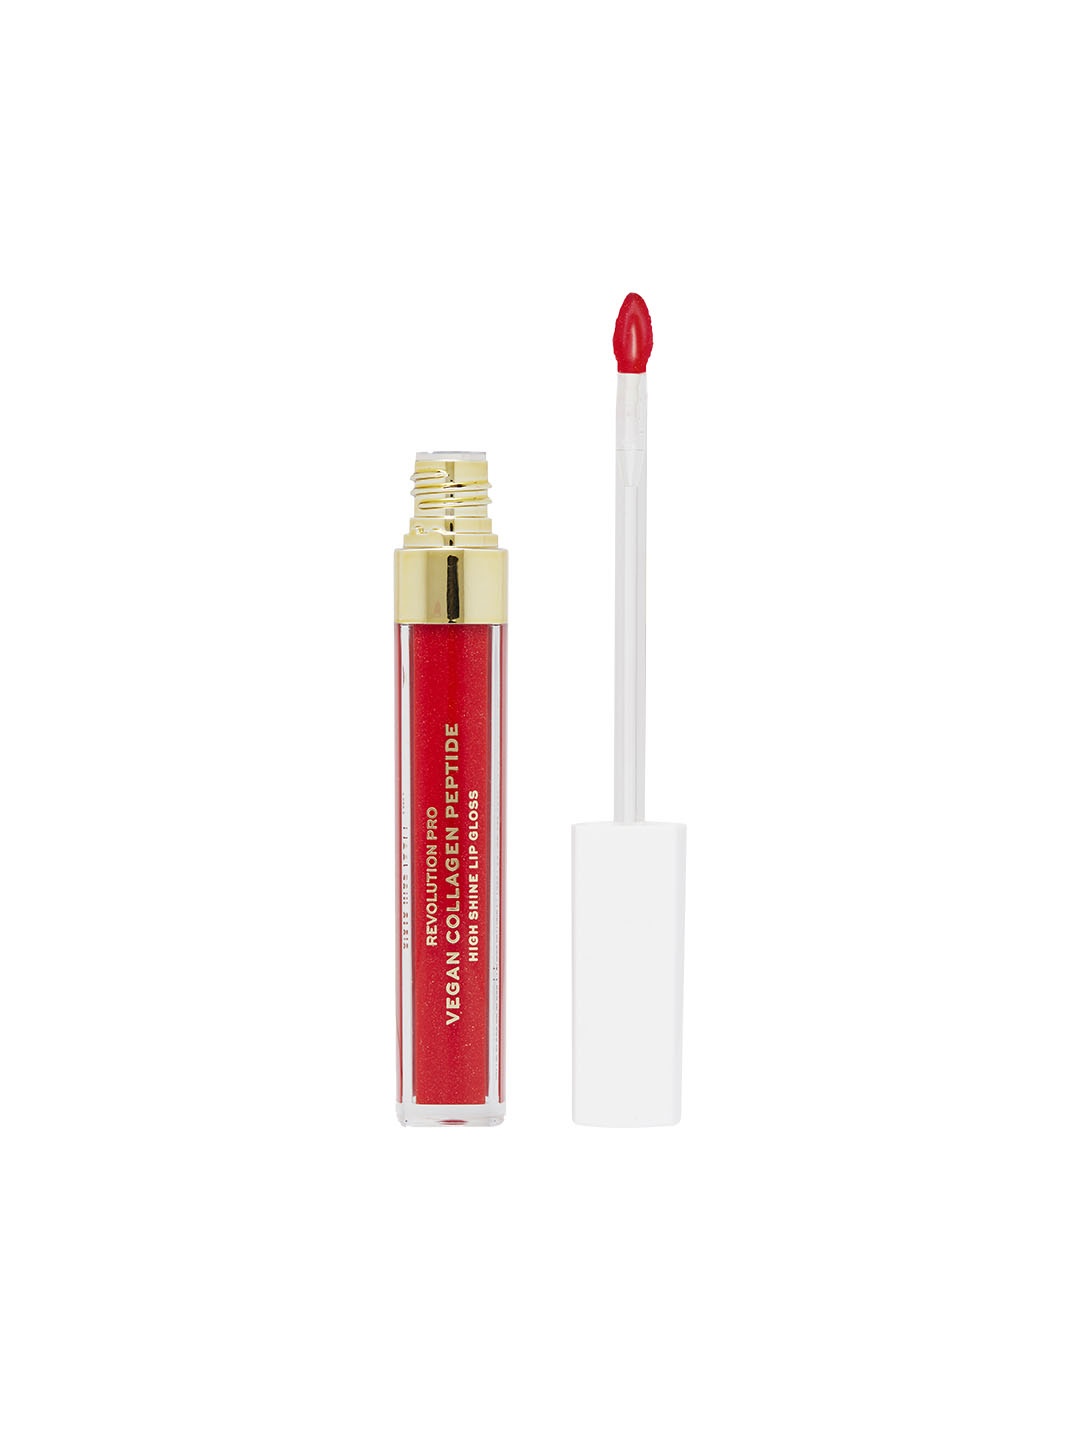 

Makeup Revolution London Revolution Pro Vegan Collagen Peptide Shine Lip Gloss 4ml- Cherie, Red